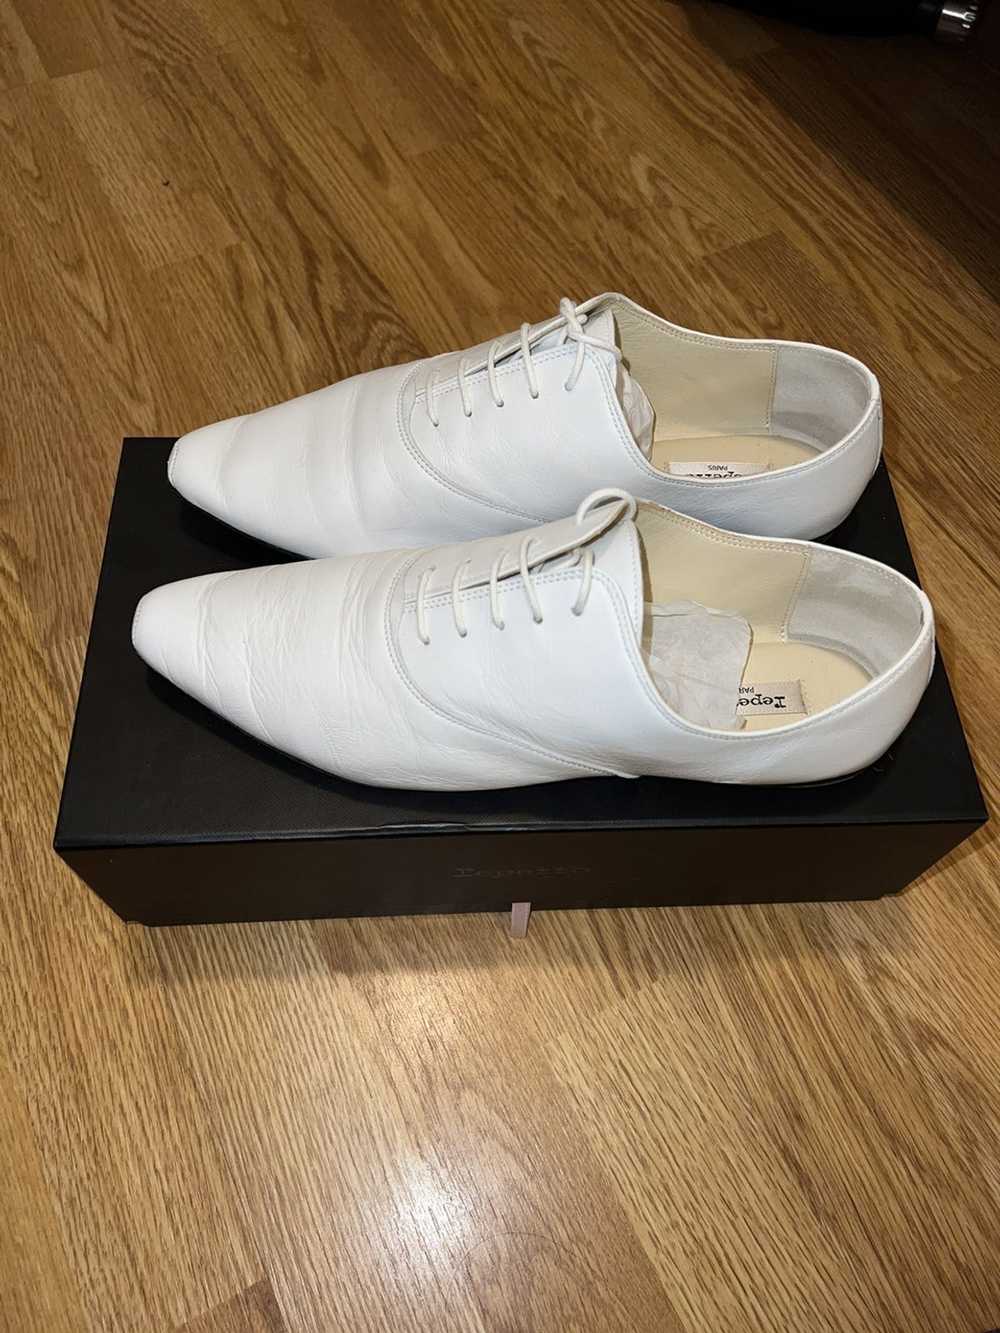 Repetto Repetto White Roy Oxford Shoes - image 1